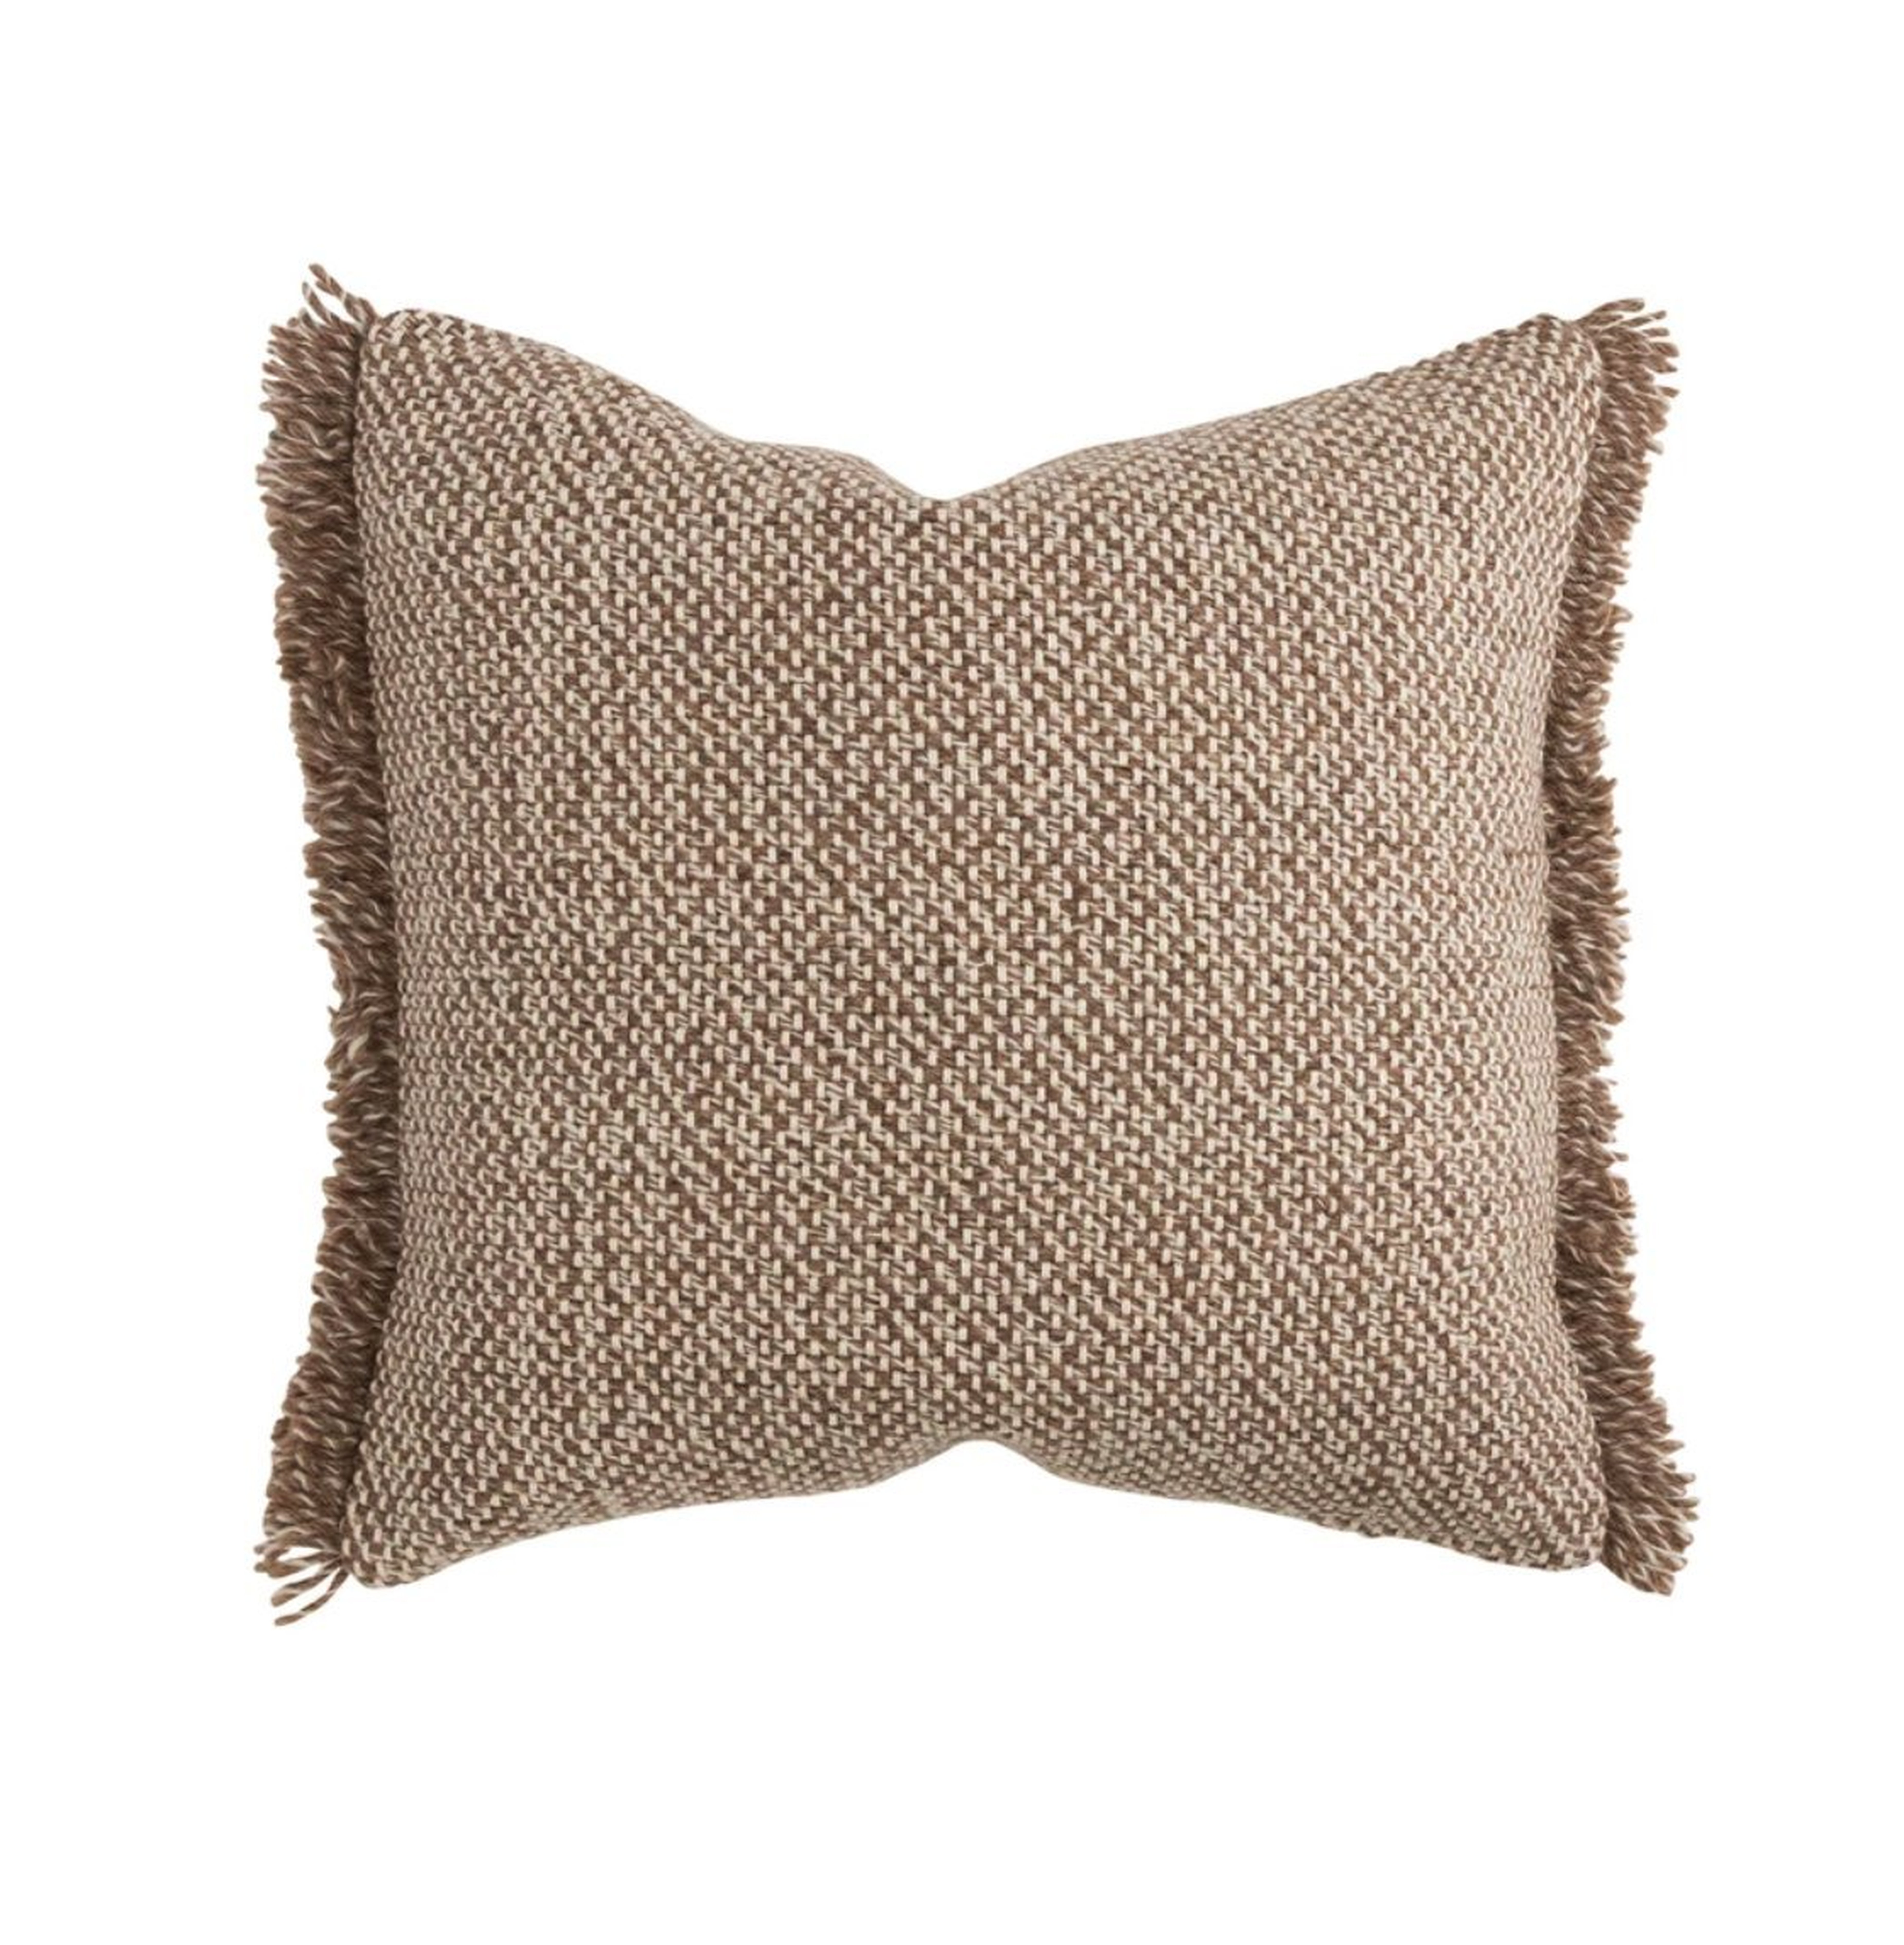 Tillerson Woven Pillow Cover, 20" x 20" - McGee & Co.